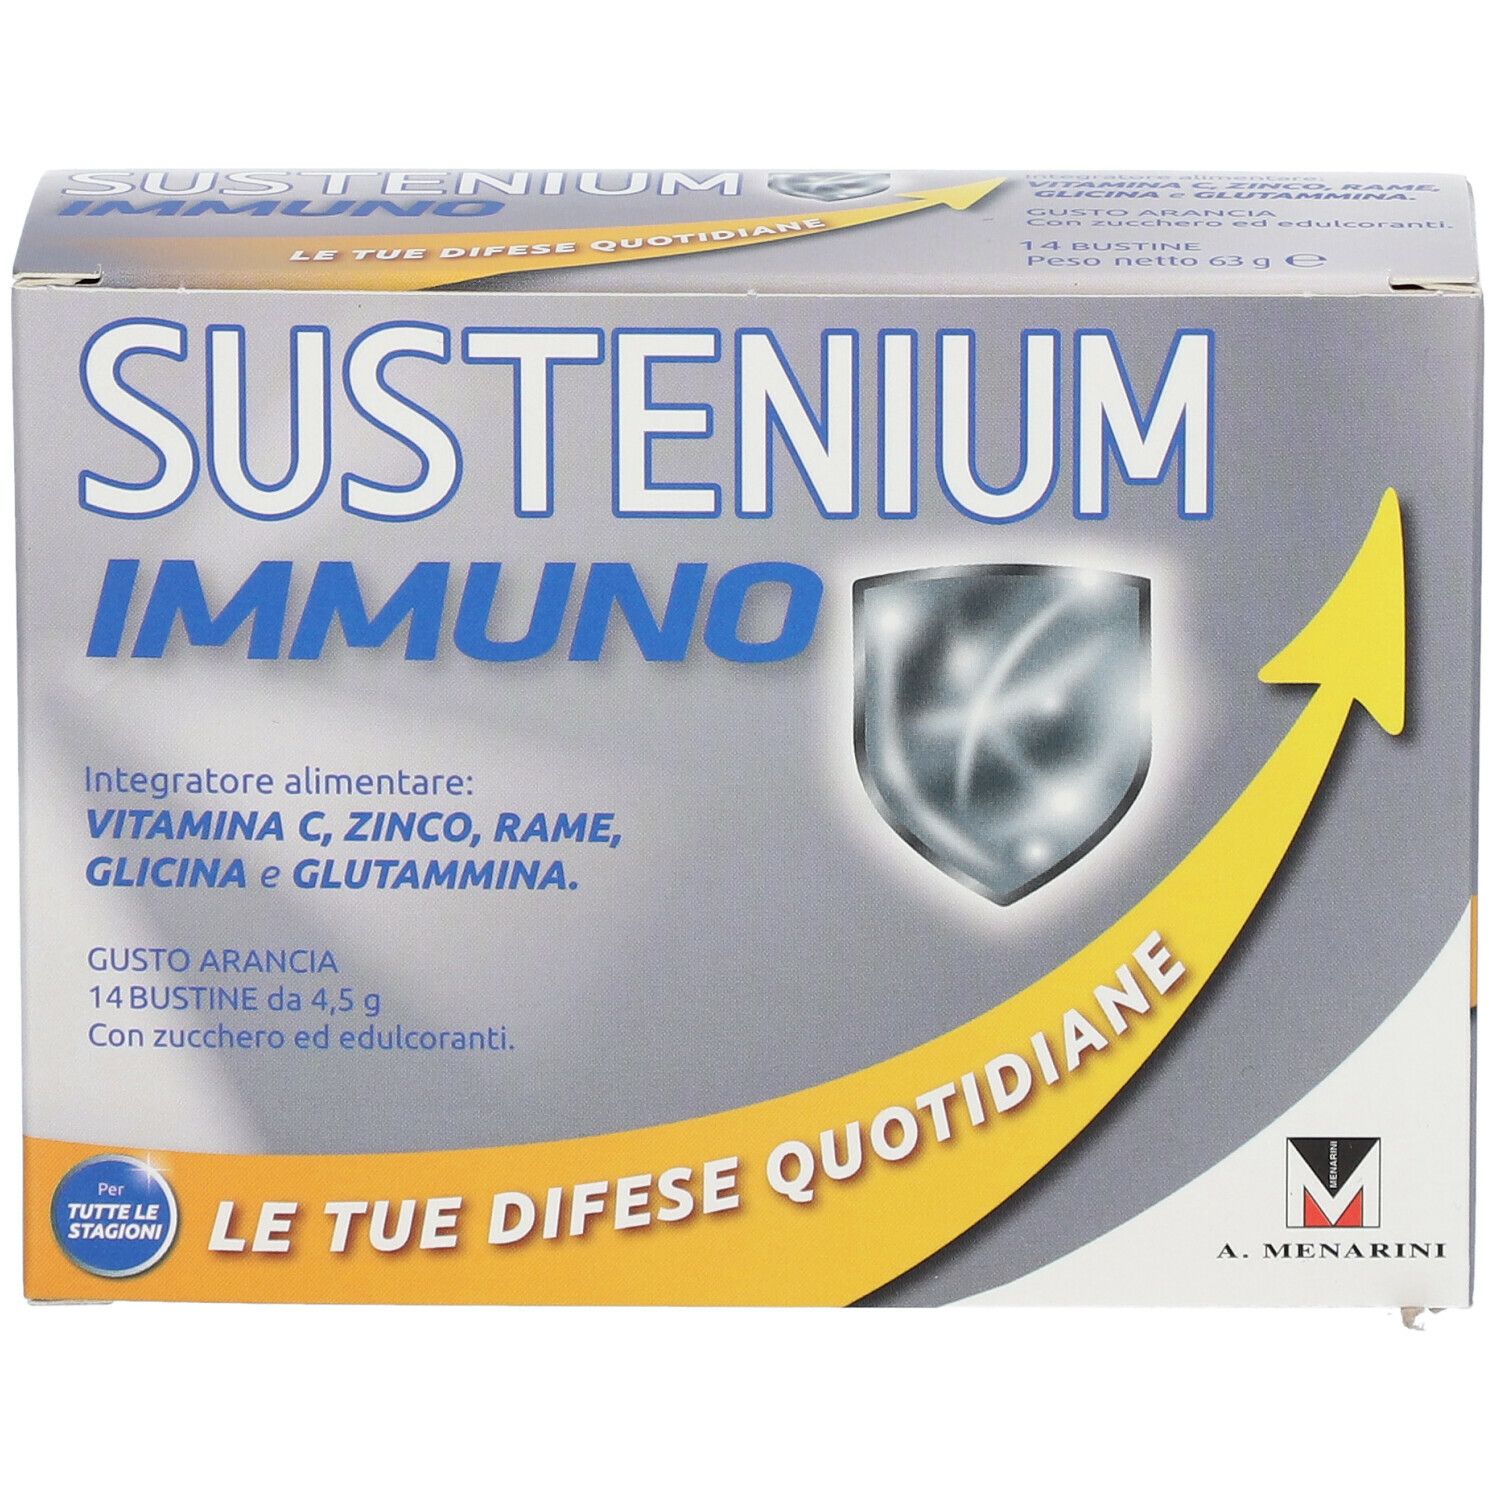 SUSTENIUM Immuno Energy Formula Inverno